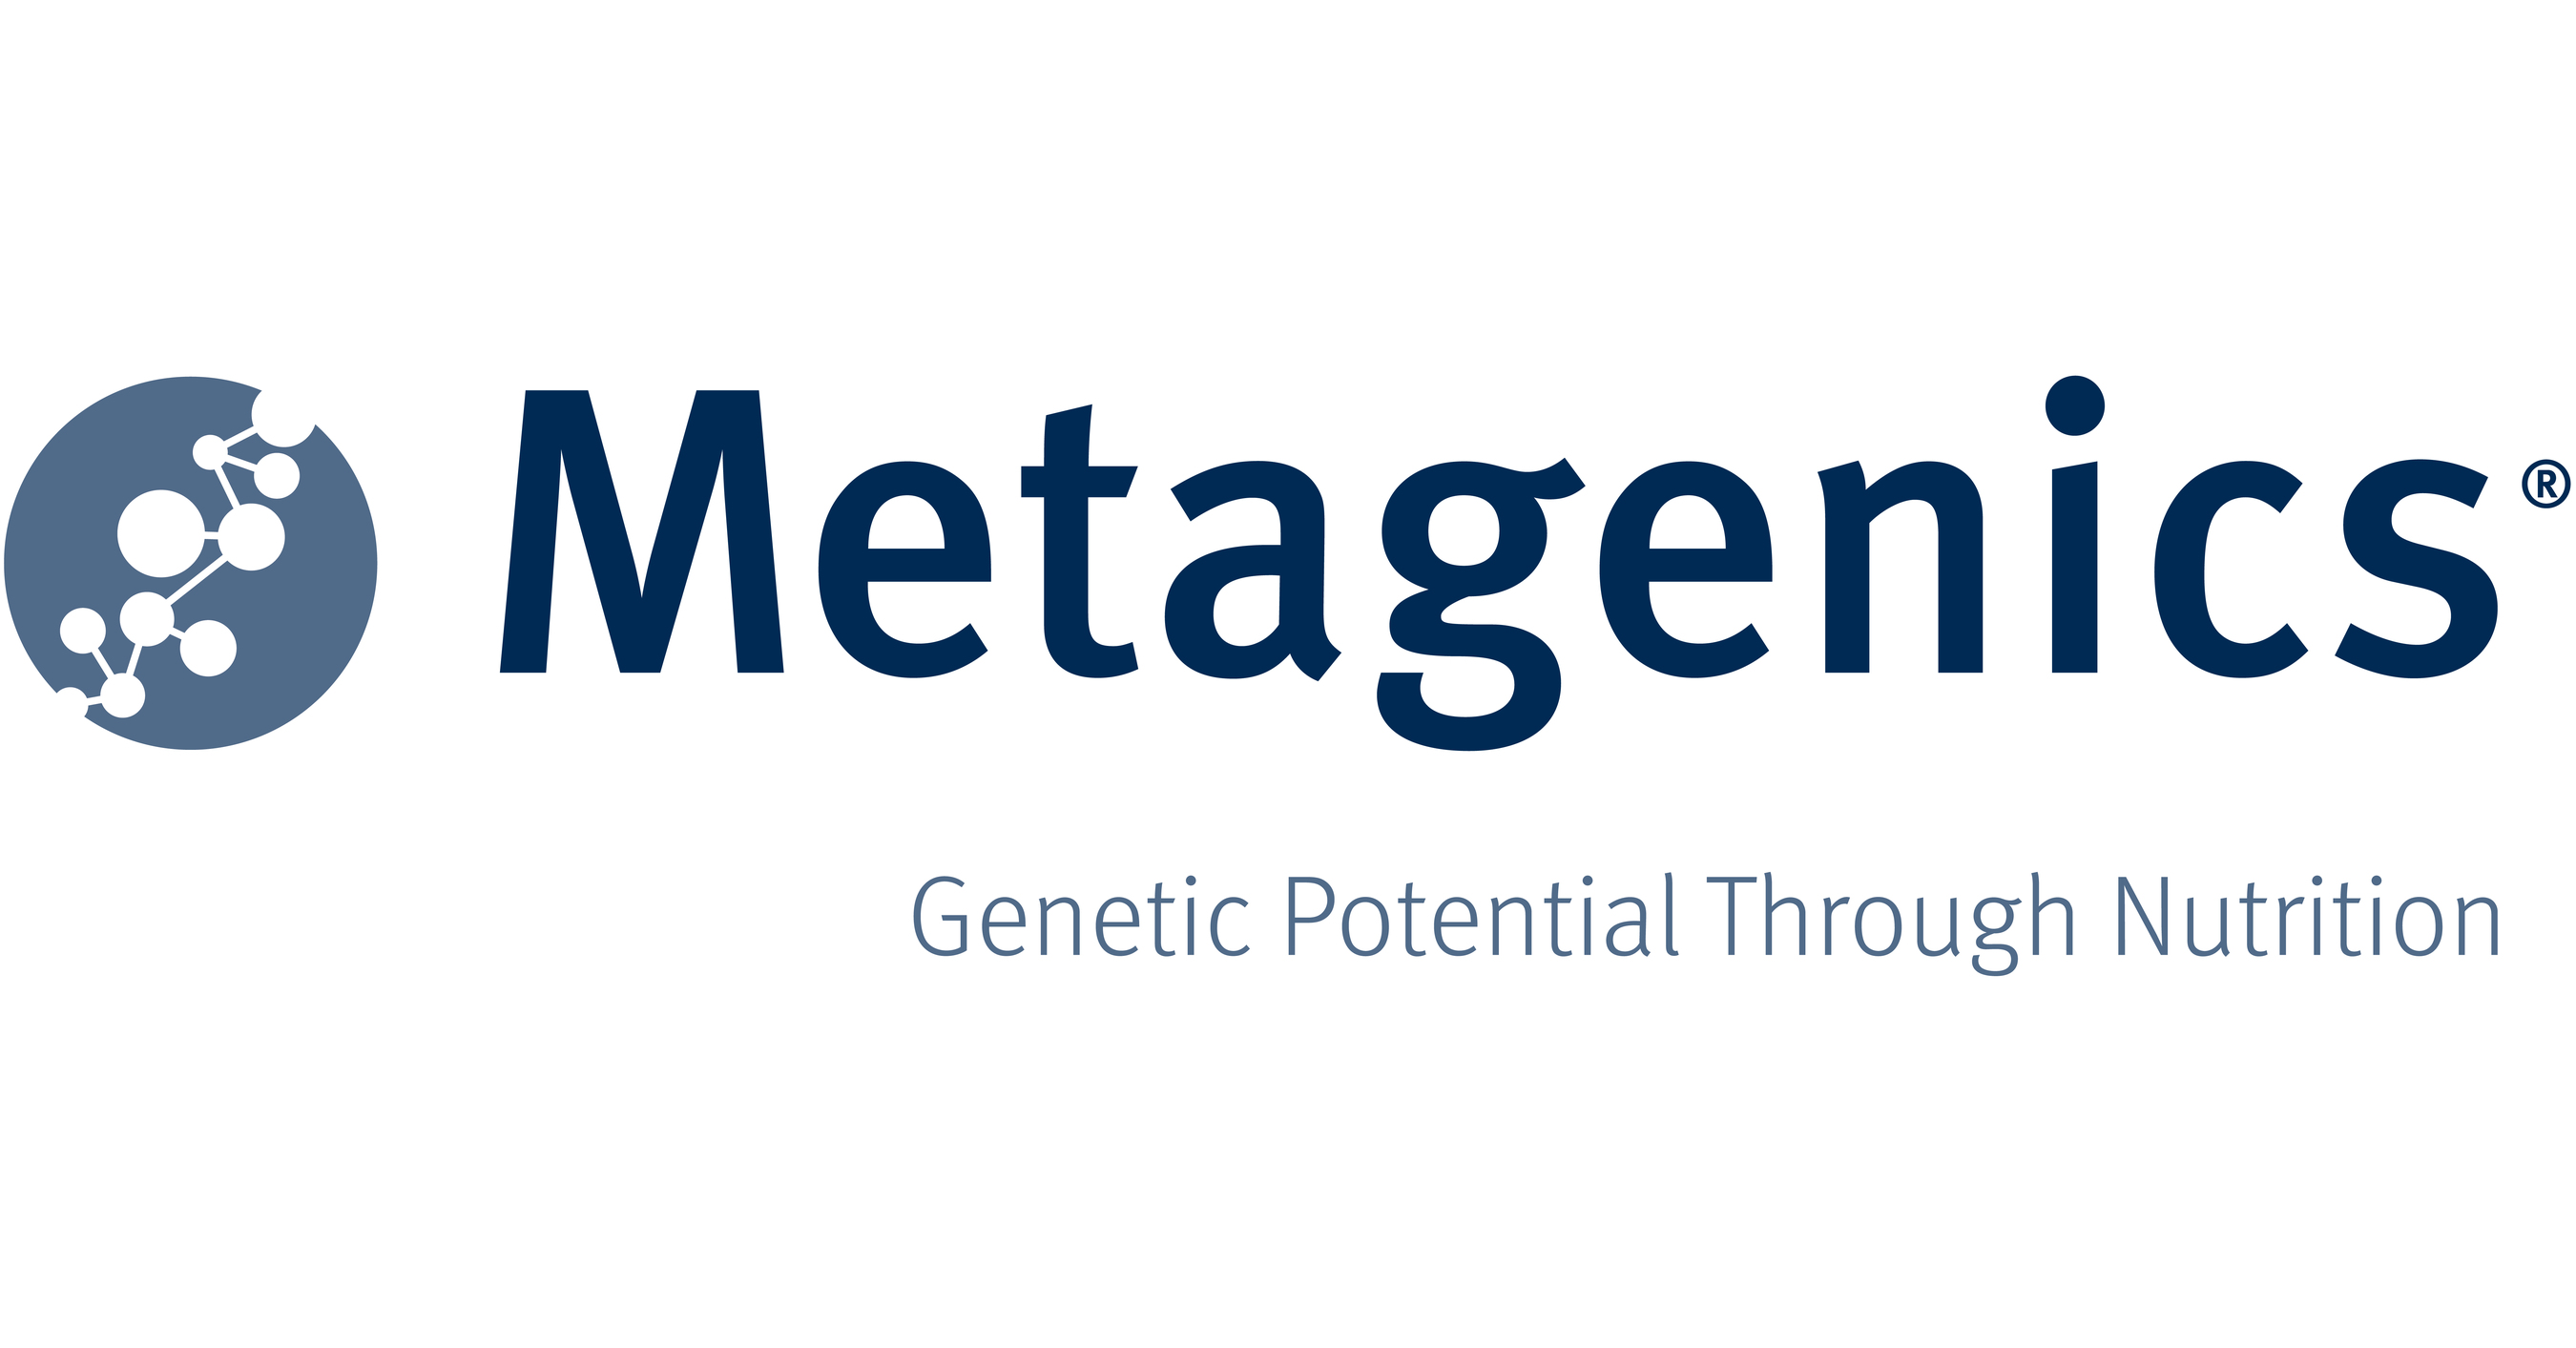 Metagenics Picture